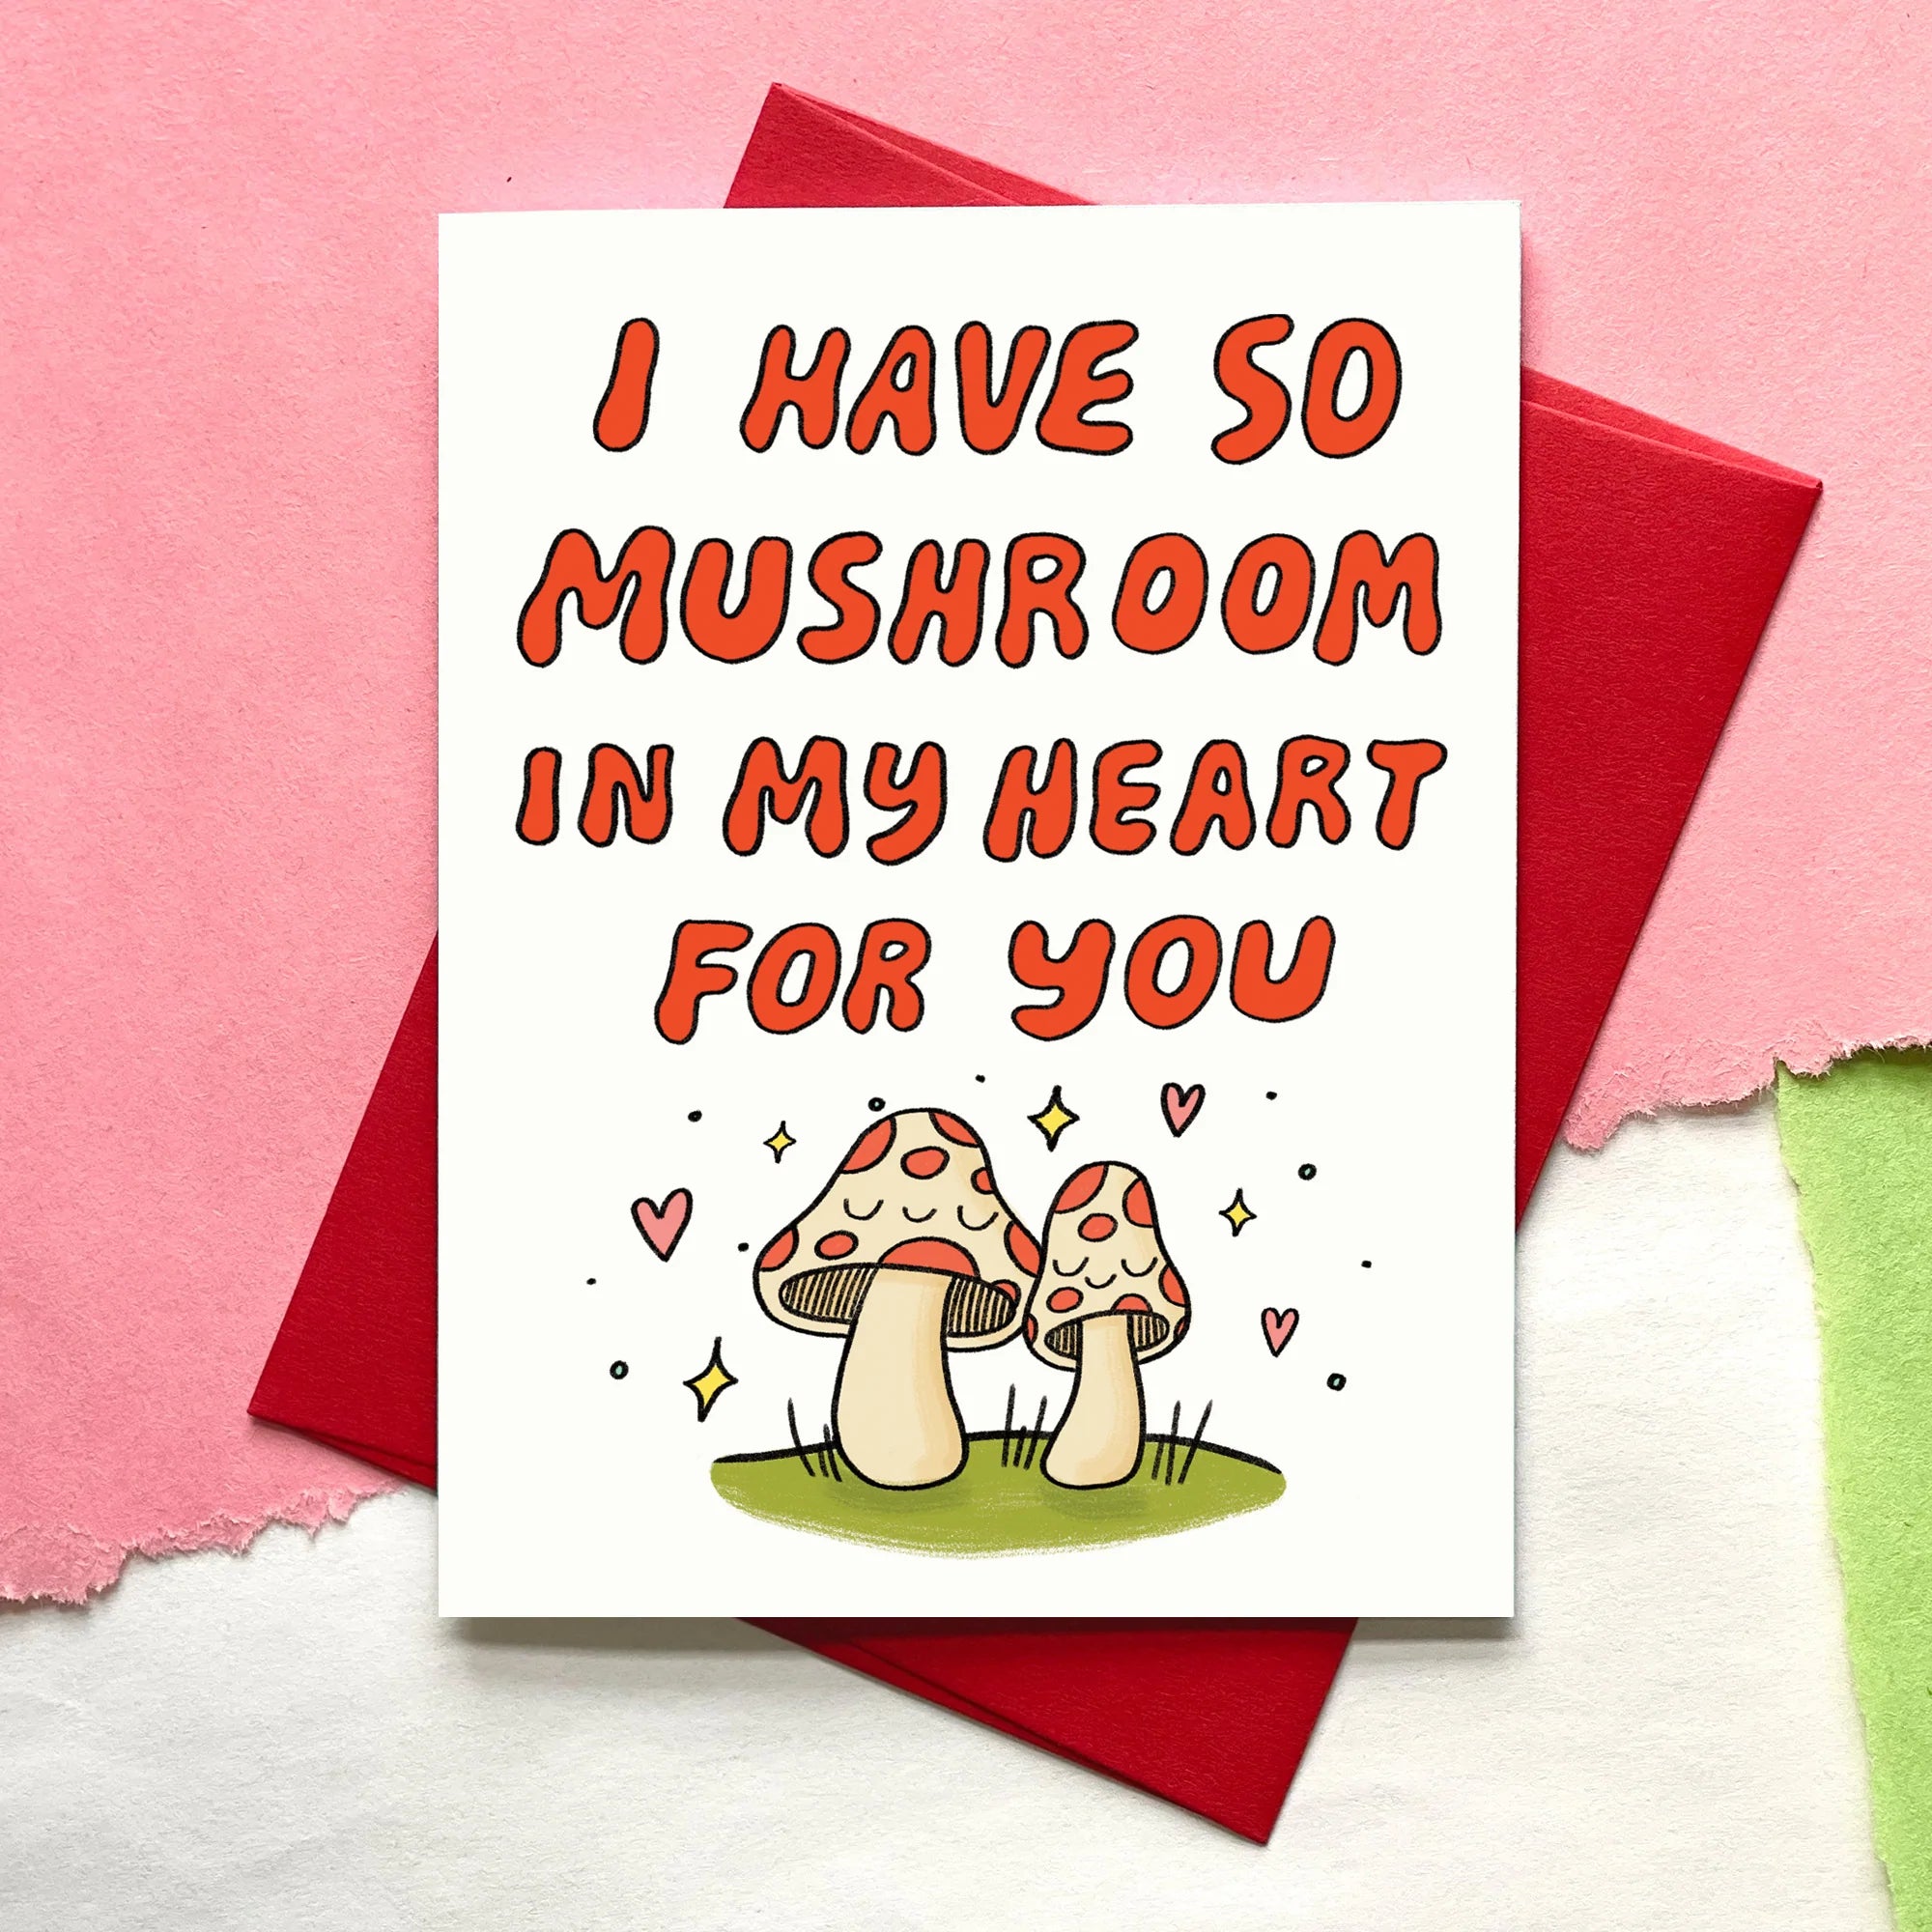 mushroom love